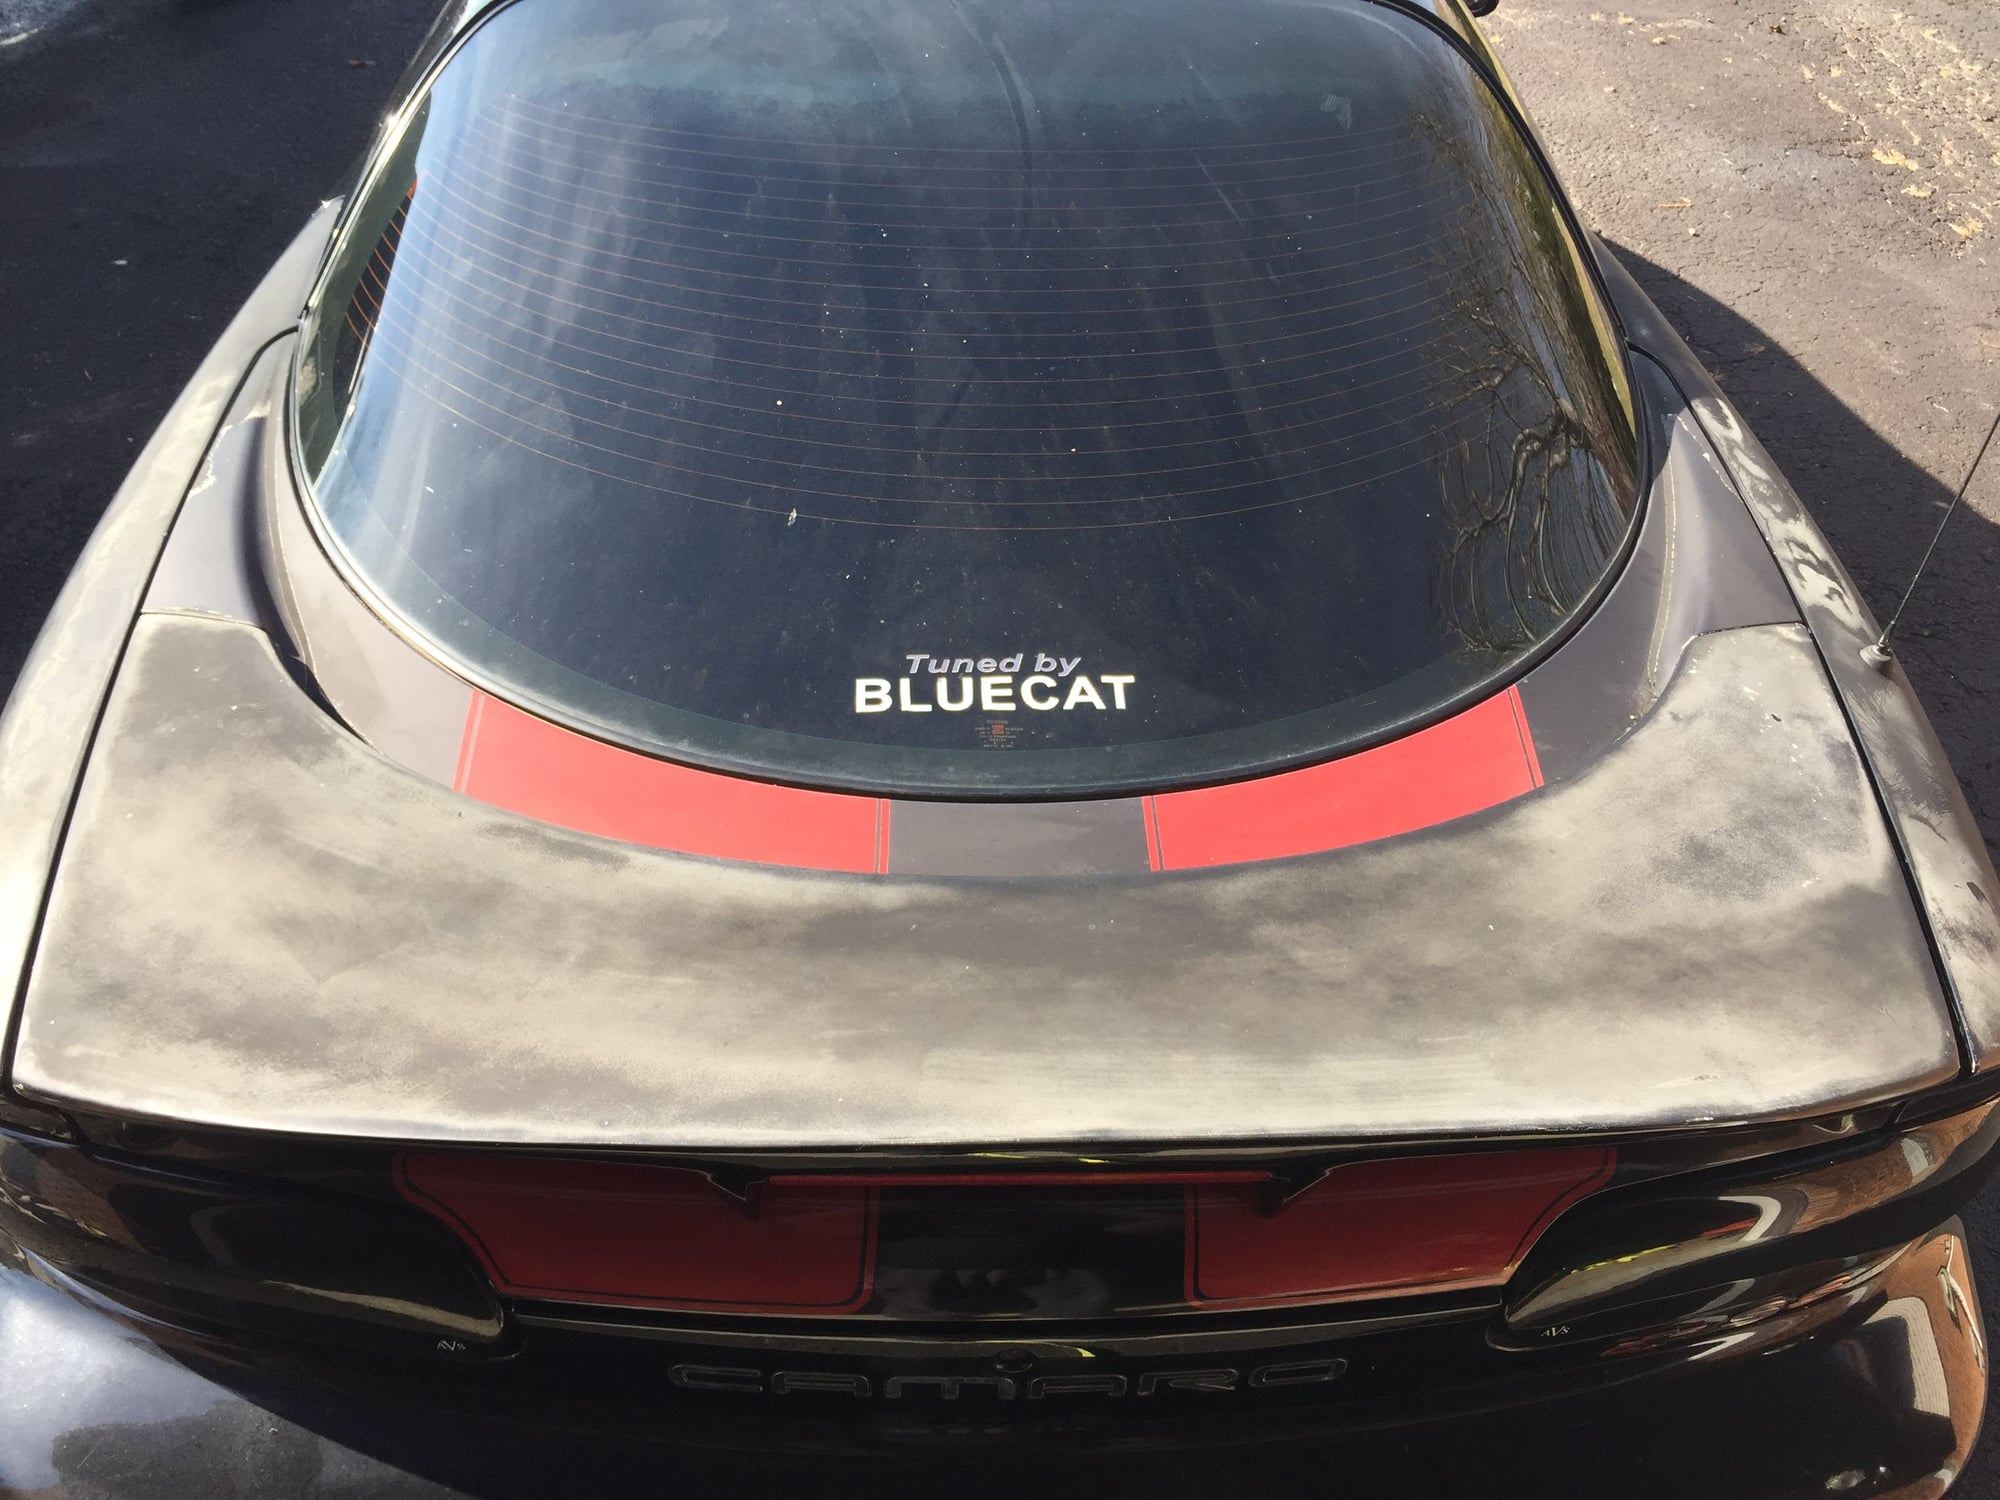 Plastidip - Miata Turbo Forum - Boost cars, acquire cats.